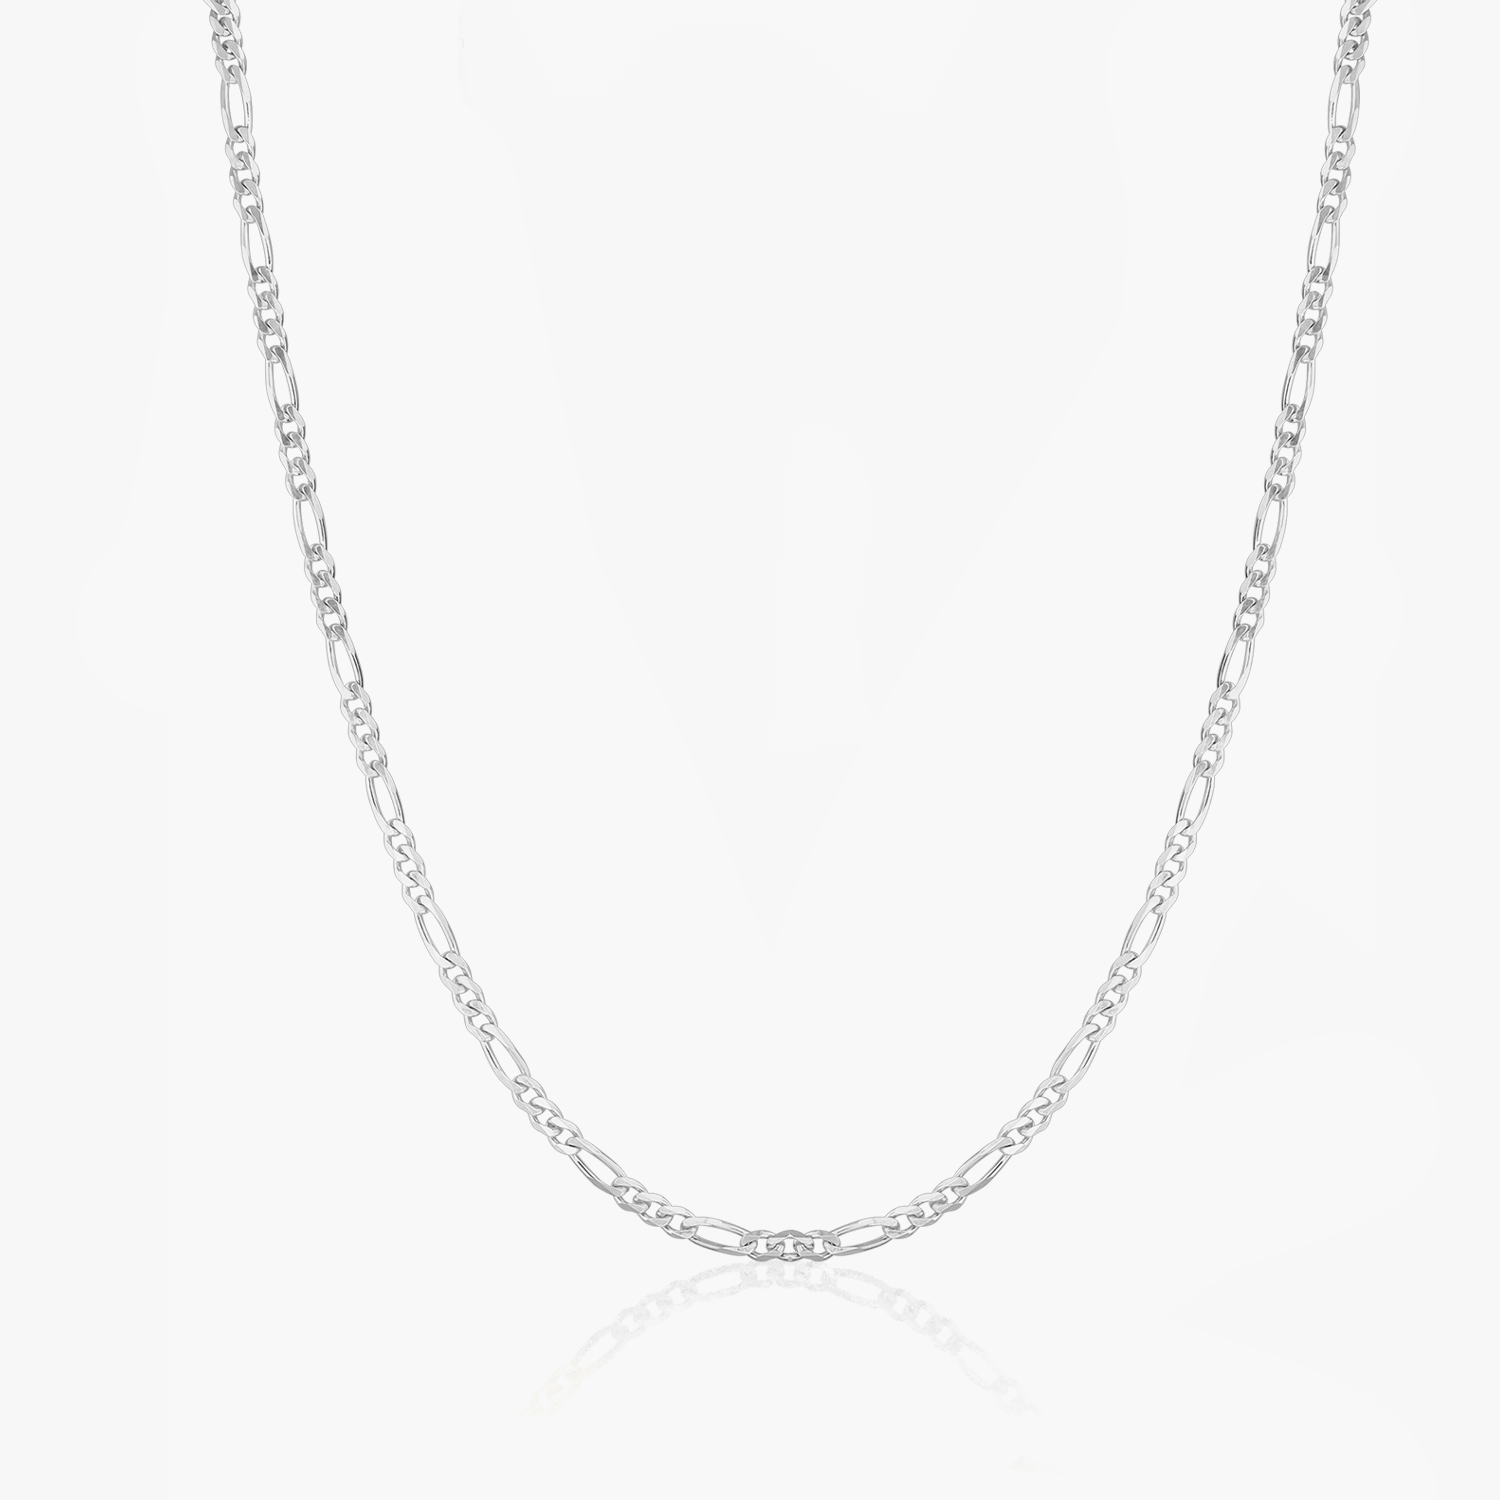 Silver Figaro chain